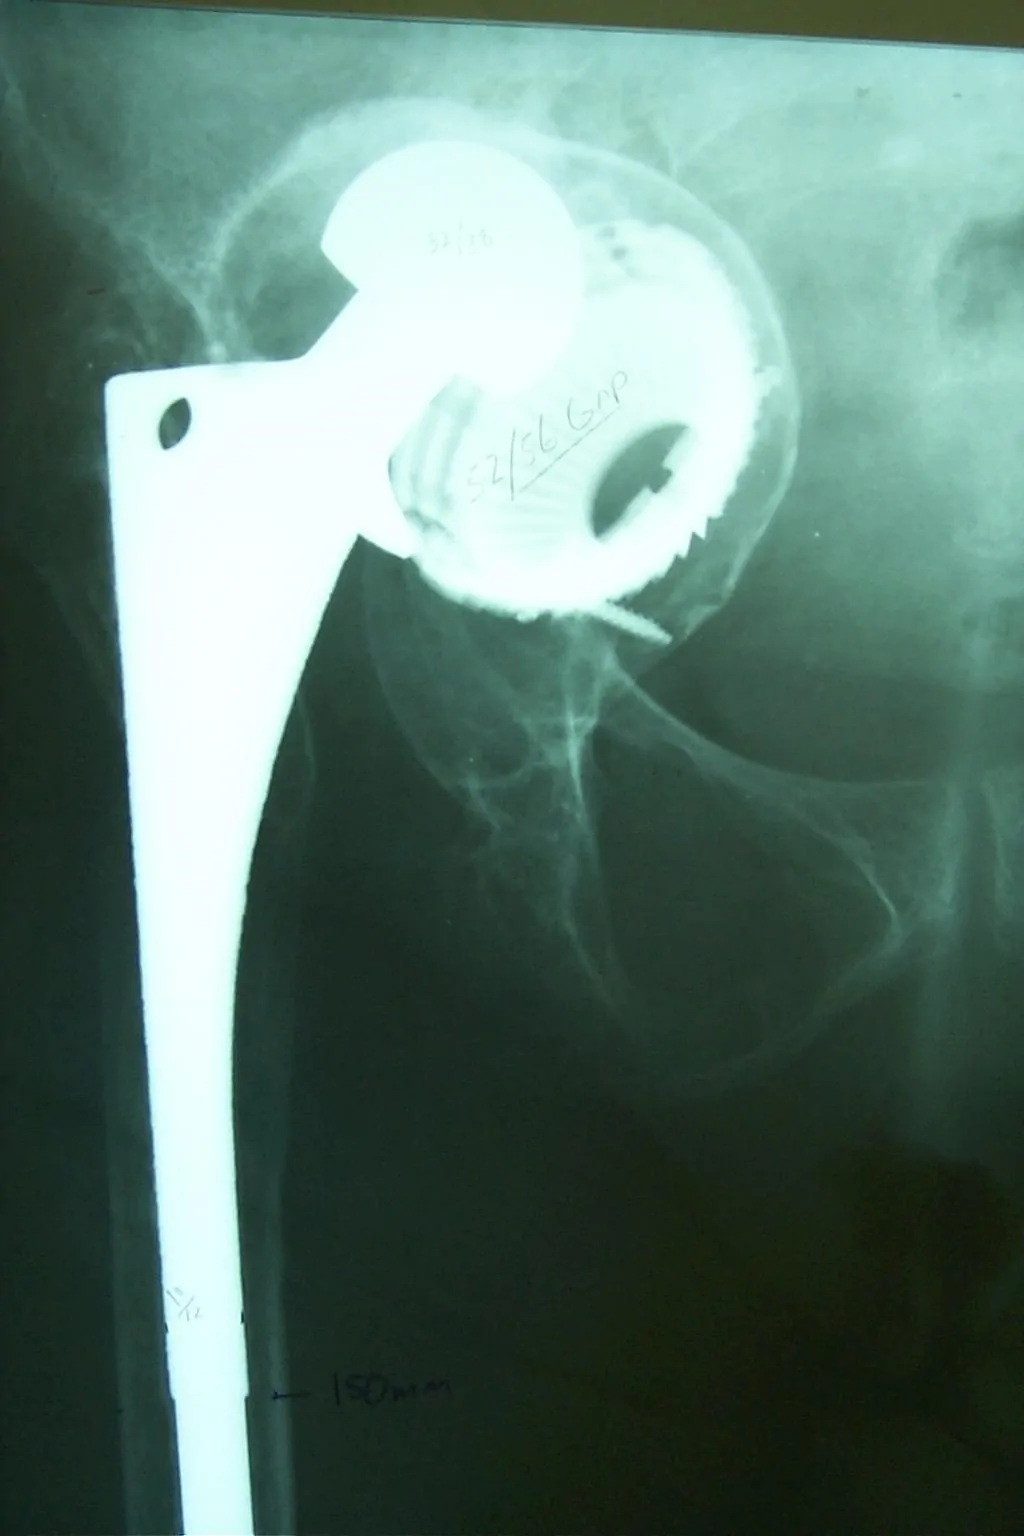 En la artroplastia de revisión de cadera en los casos de gran pérdida ósea los objetivos del cirujano son, inicialmente, restituir el centro de rotación y la biomecánica de la articulación, obtener una cadera estable y mantener la función de la extremidad. A largo plazo el objetivo es restituir la masa ósea.